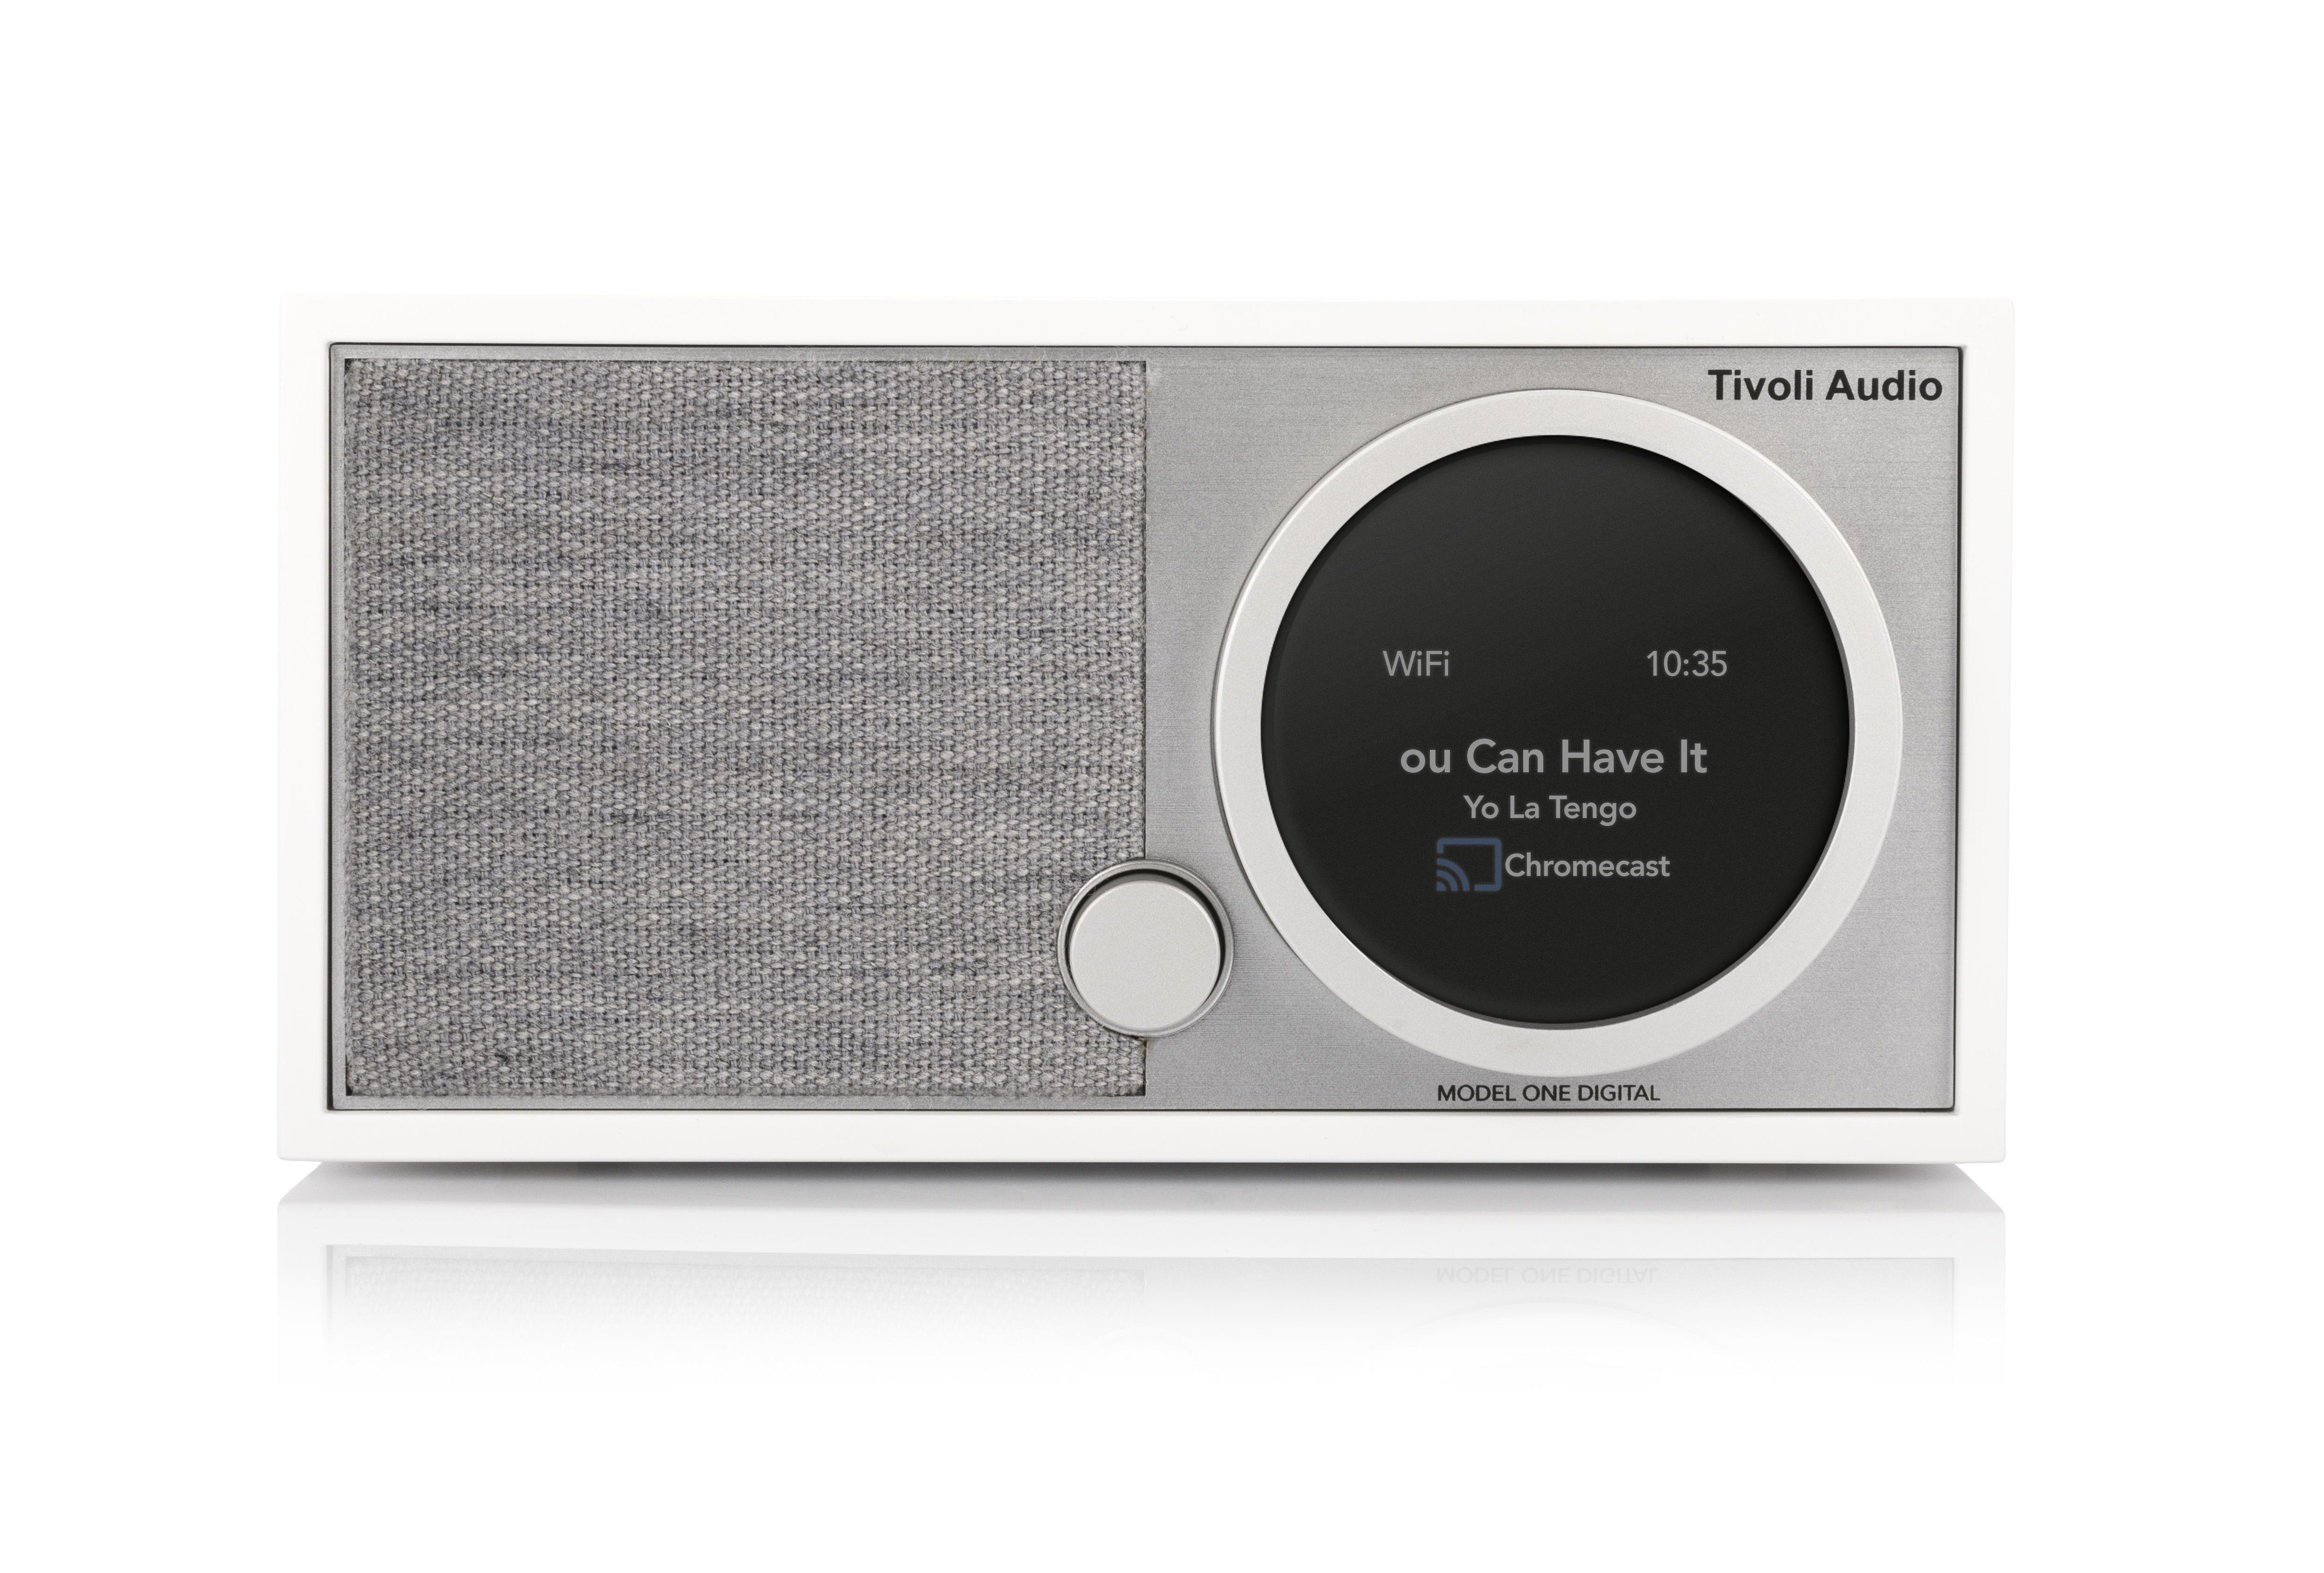 Tivoli Audio Model One Digital+ Digitalradio (DAB) (Digitalradio (DAB), FM, Bluetooth-Lautsprecher, Echtholz-Gehäuse) Weiss/Grau